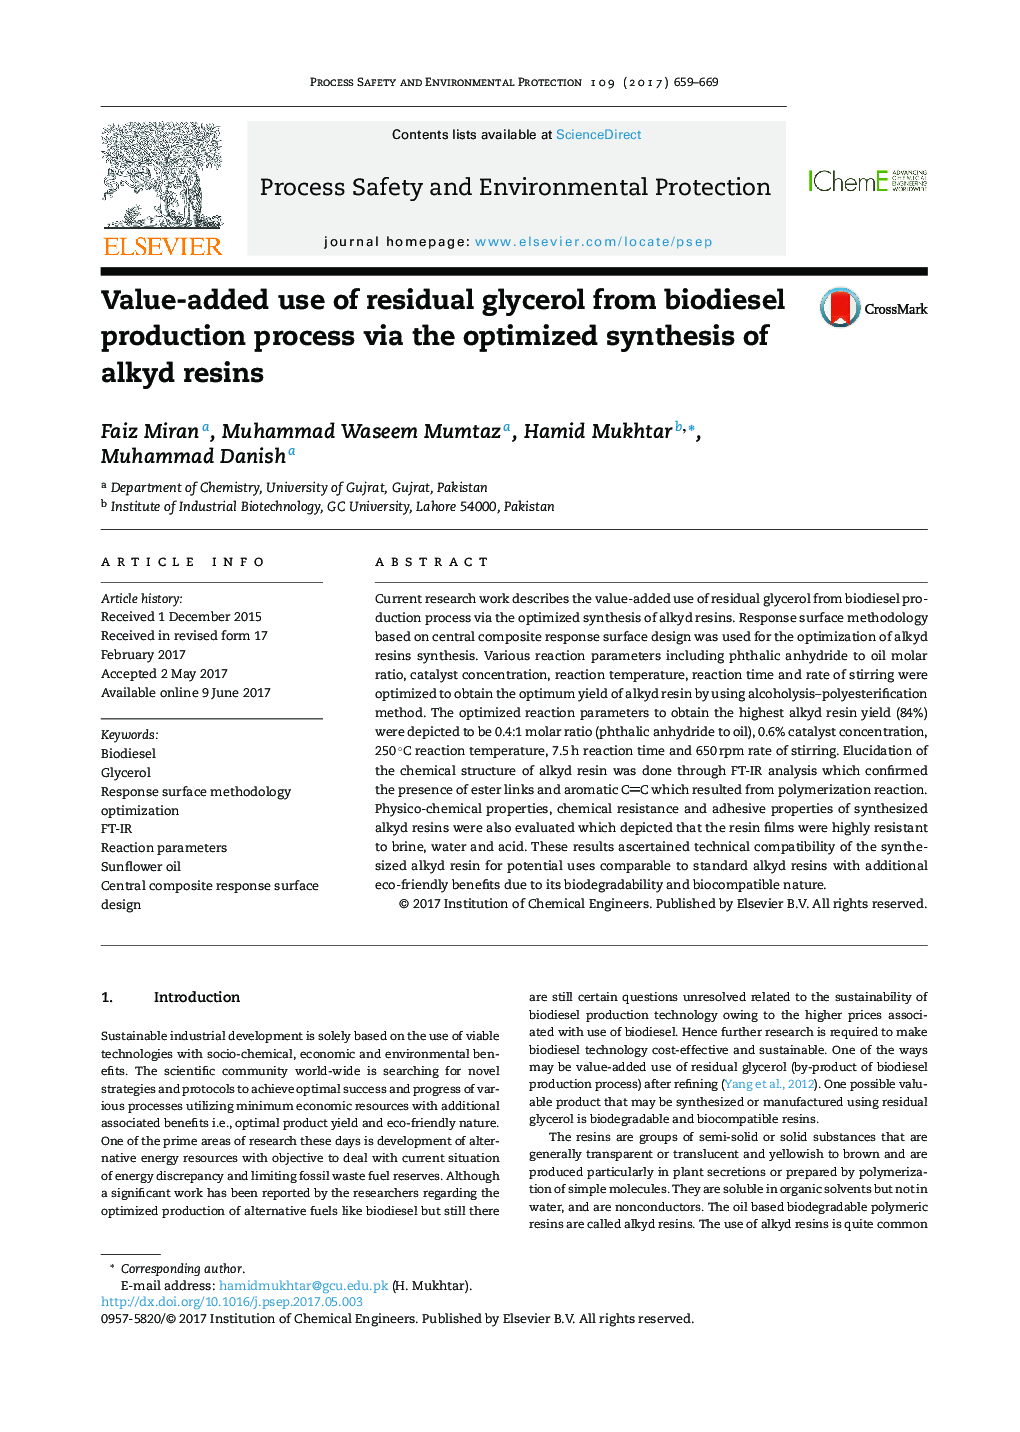 استفاده افزایشی از گلیسرول باقی مانده از فرآیند تولید بیودیزل از طریق سنتز بهینه سازی رزین های آلکیدی 